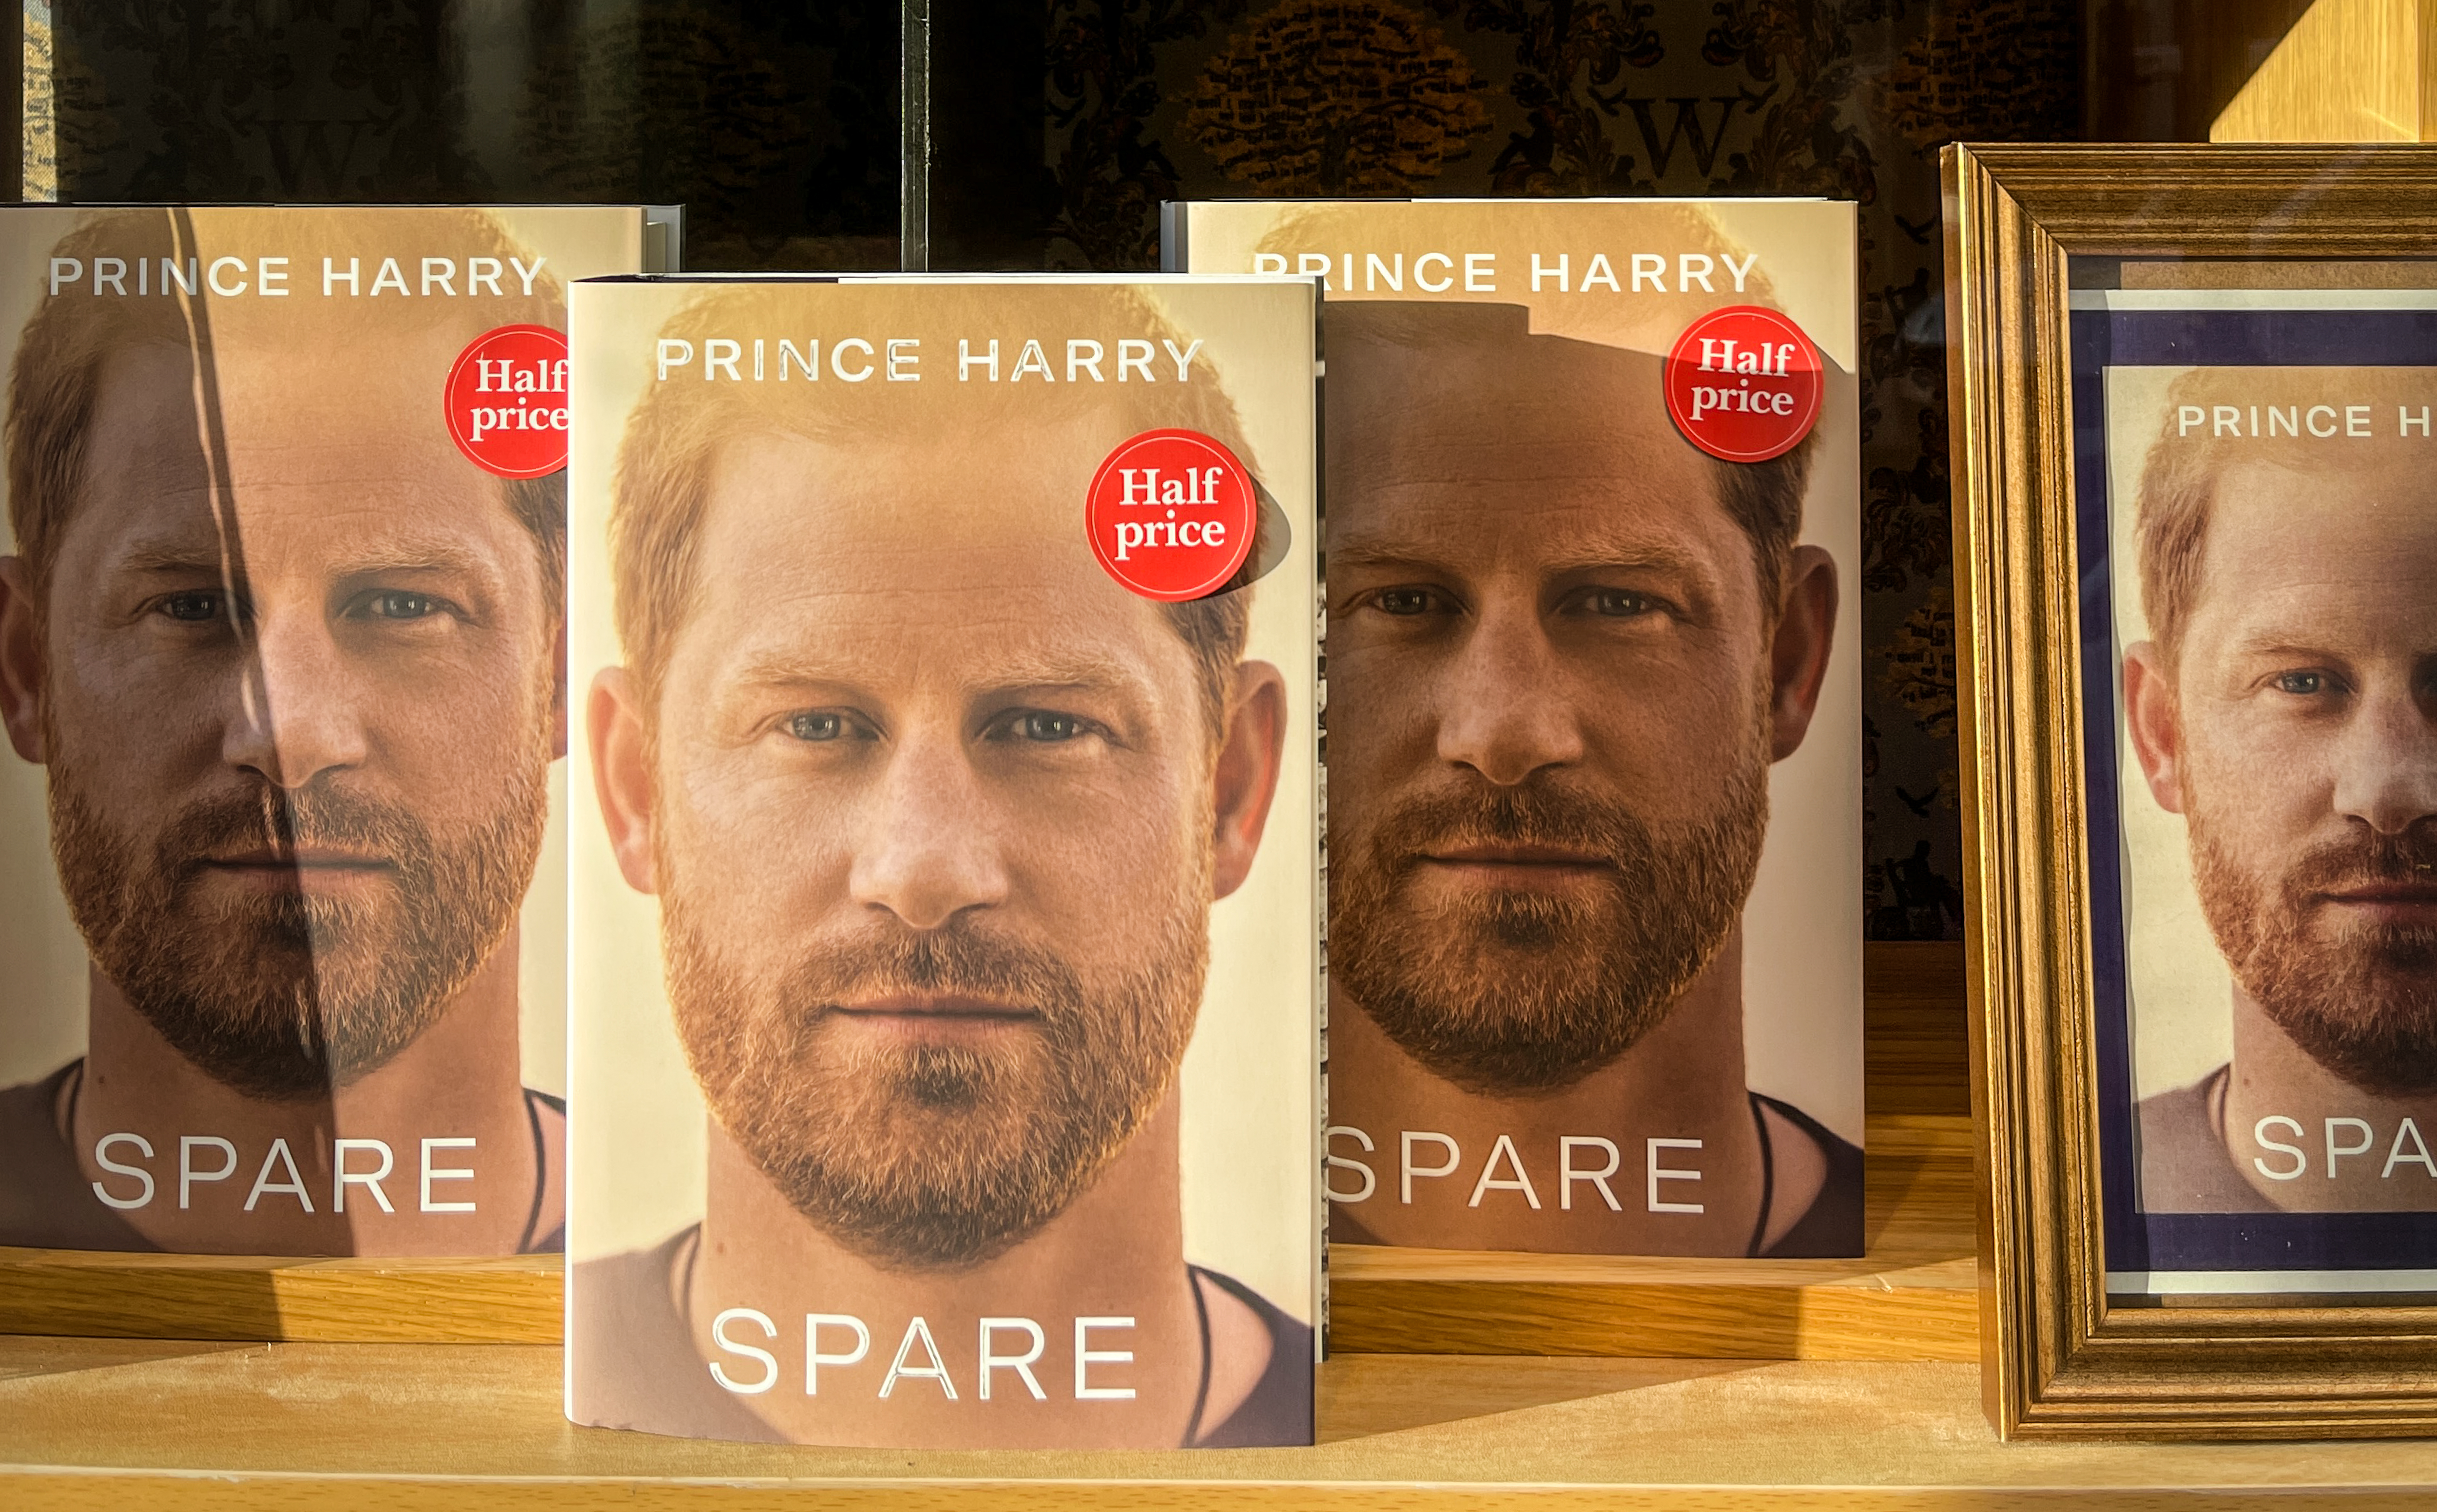 El libro del Príncipe Harry "Spare" expuesto en una librería de Bath, Reino Unido, el 11 de enero de 2023 | Foto: Getty Images